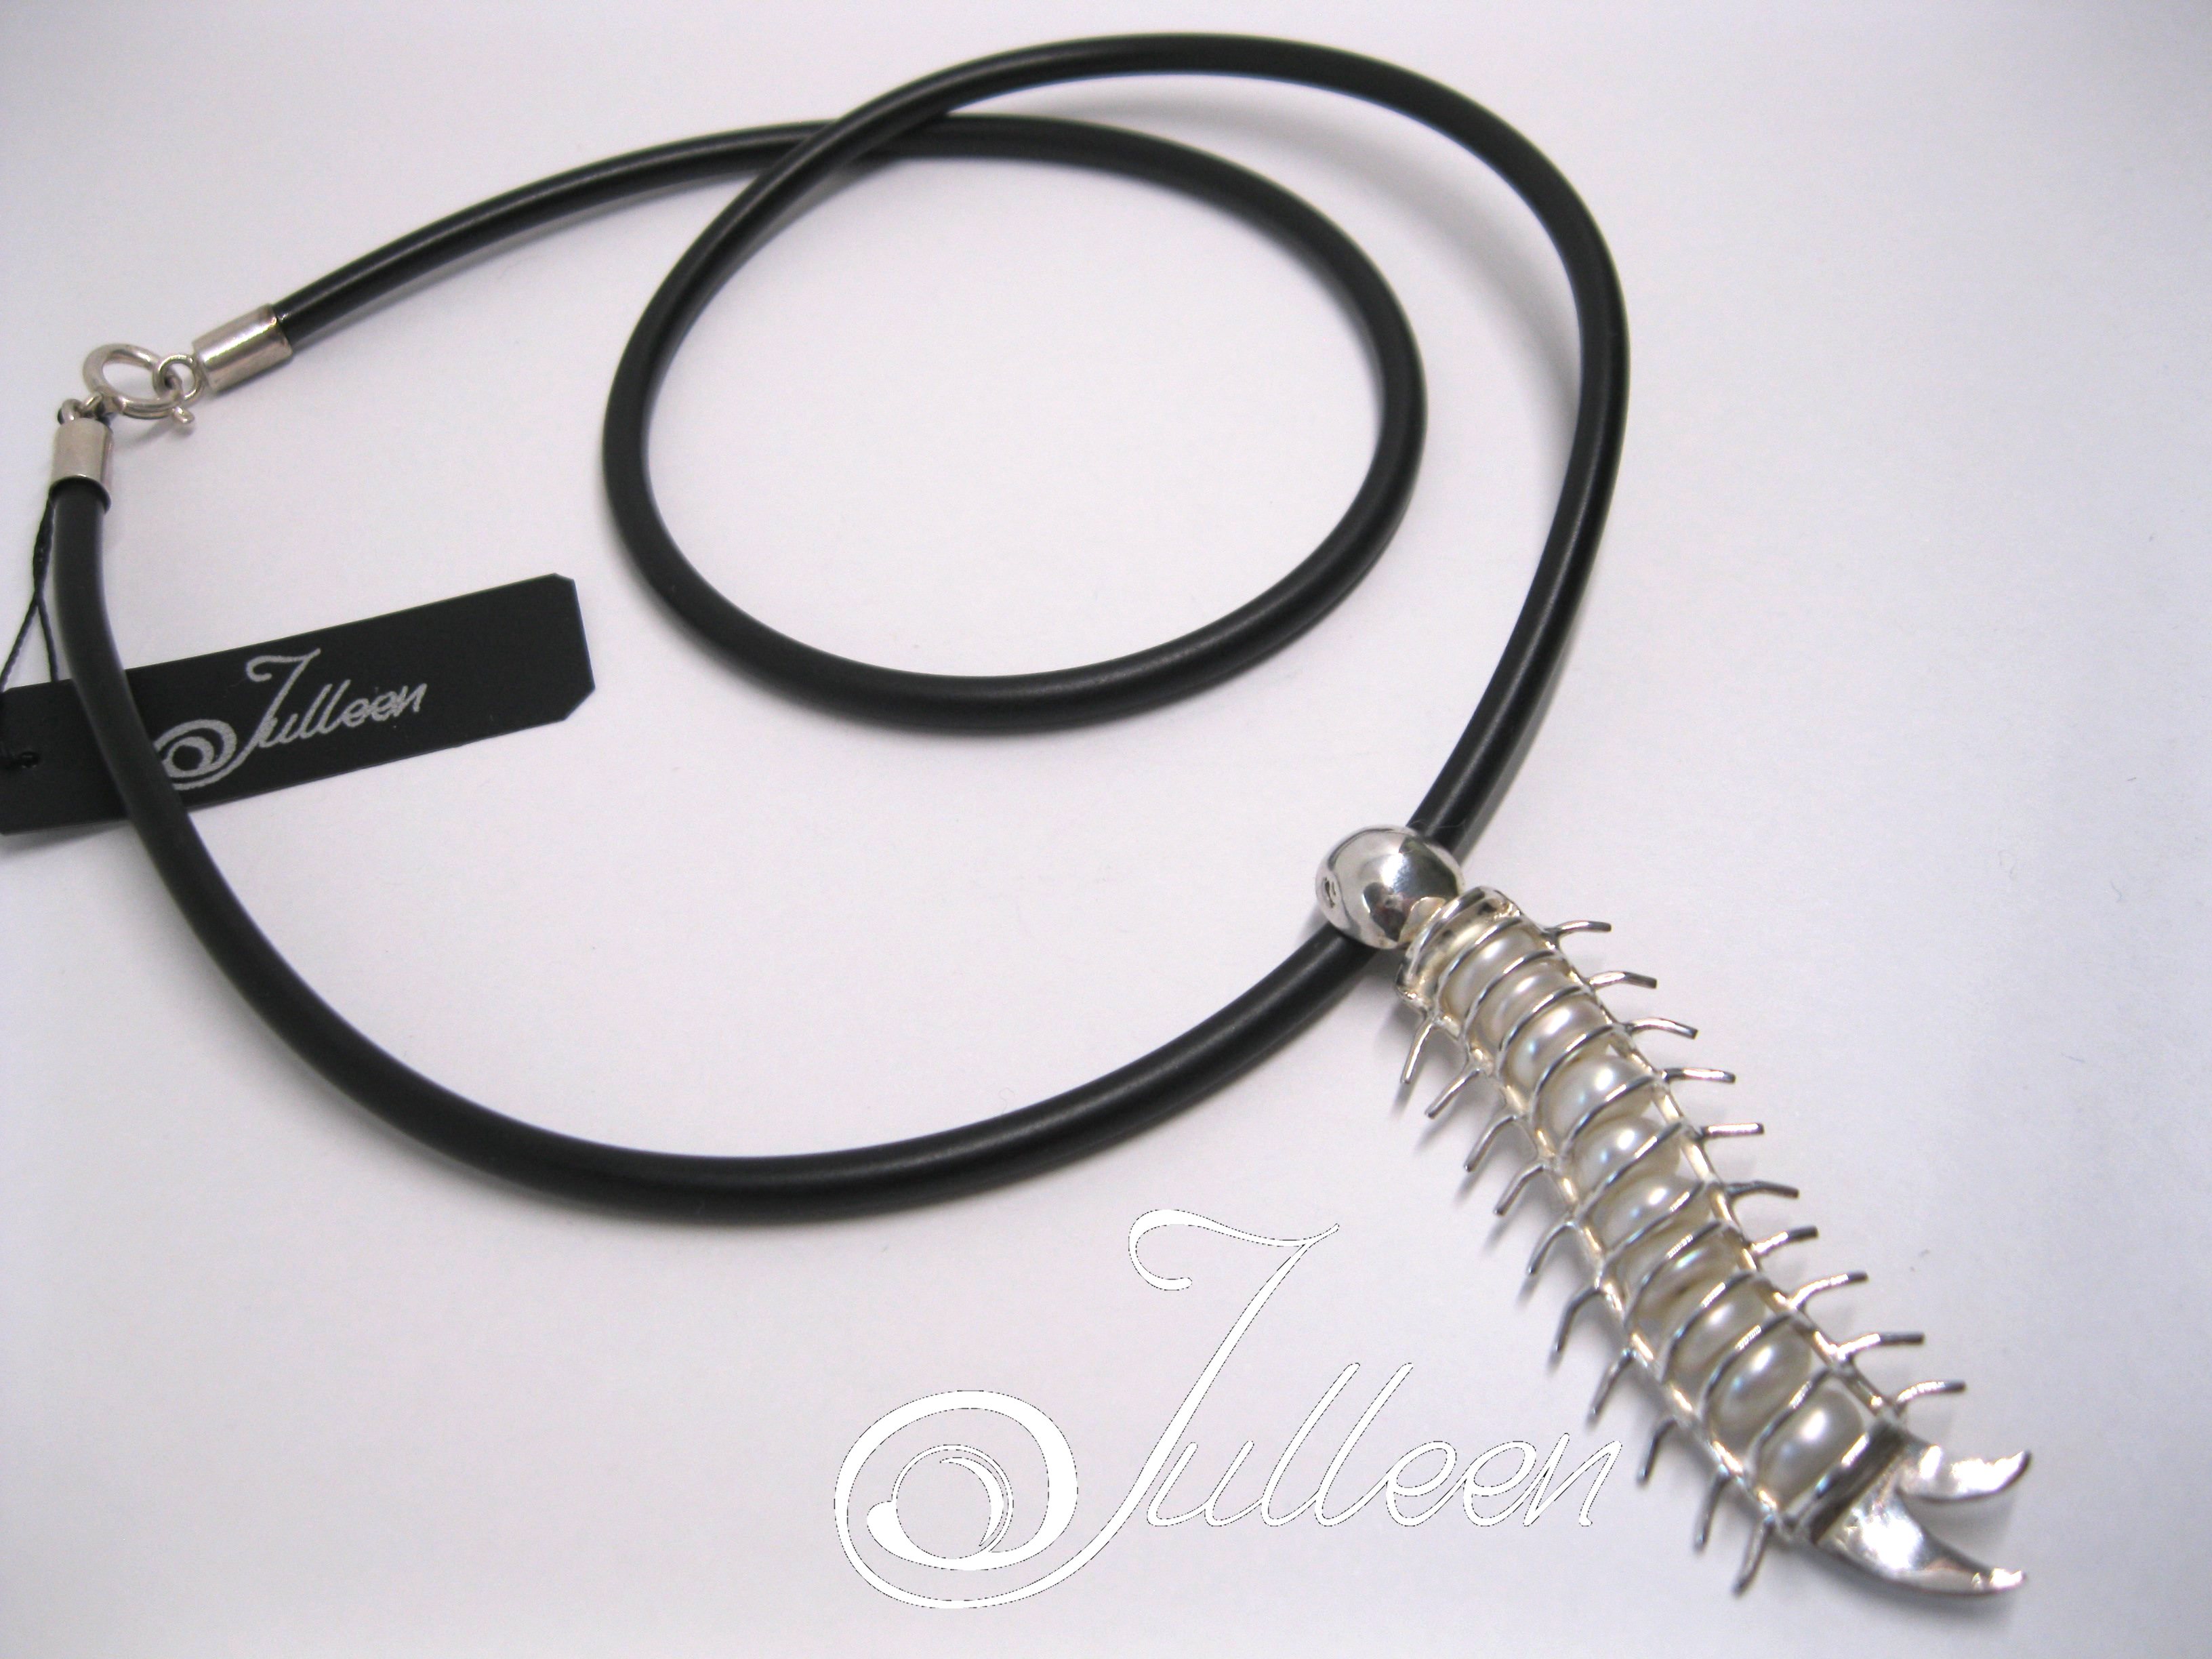 Centipede-PD309-4 001